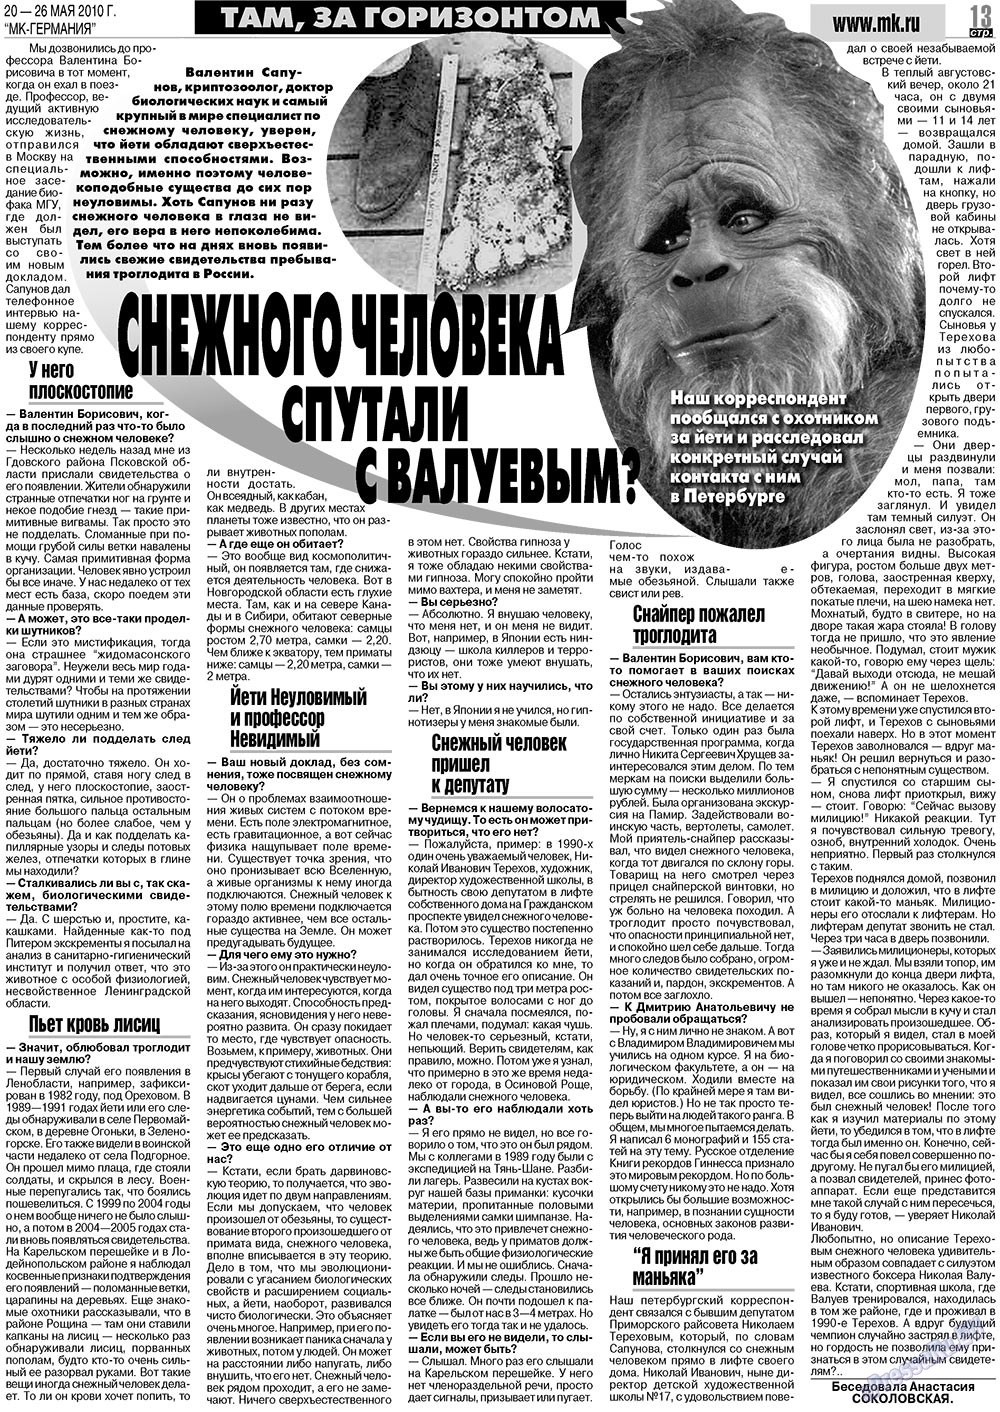 МК-Германия (газета). 2010 год, номер 21, стр. 13